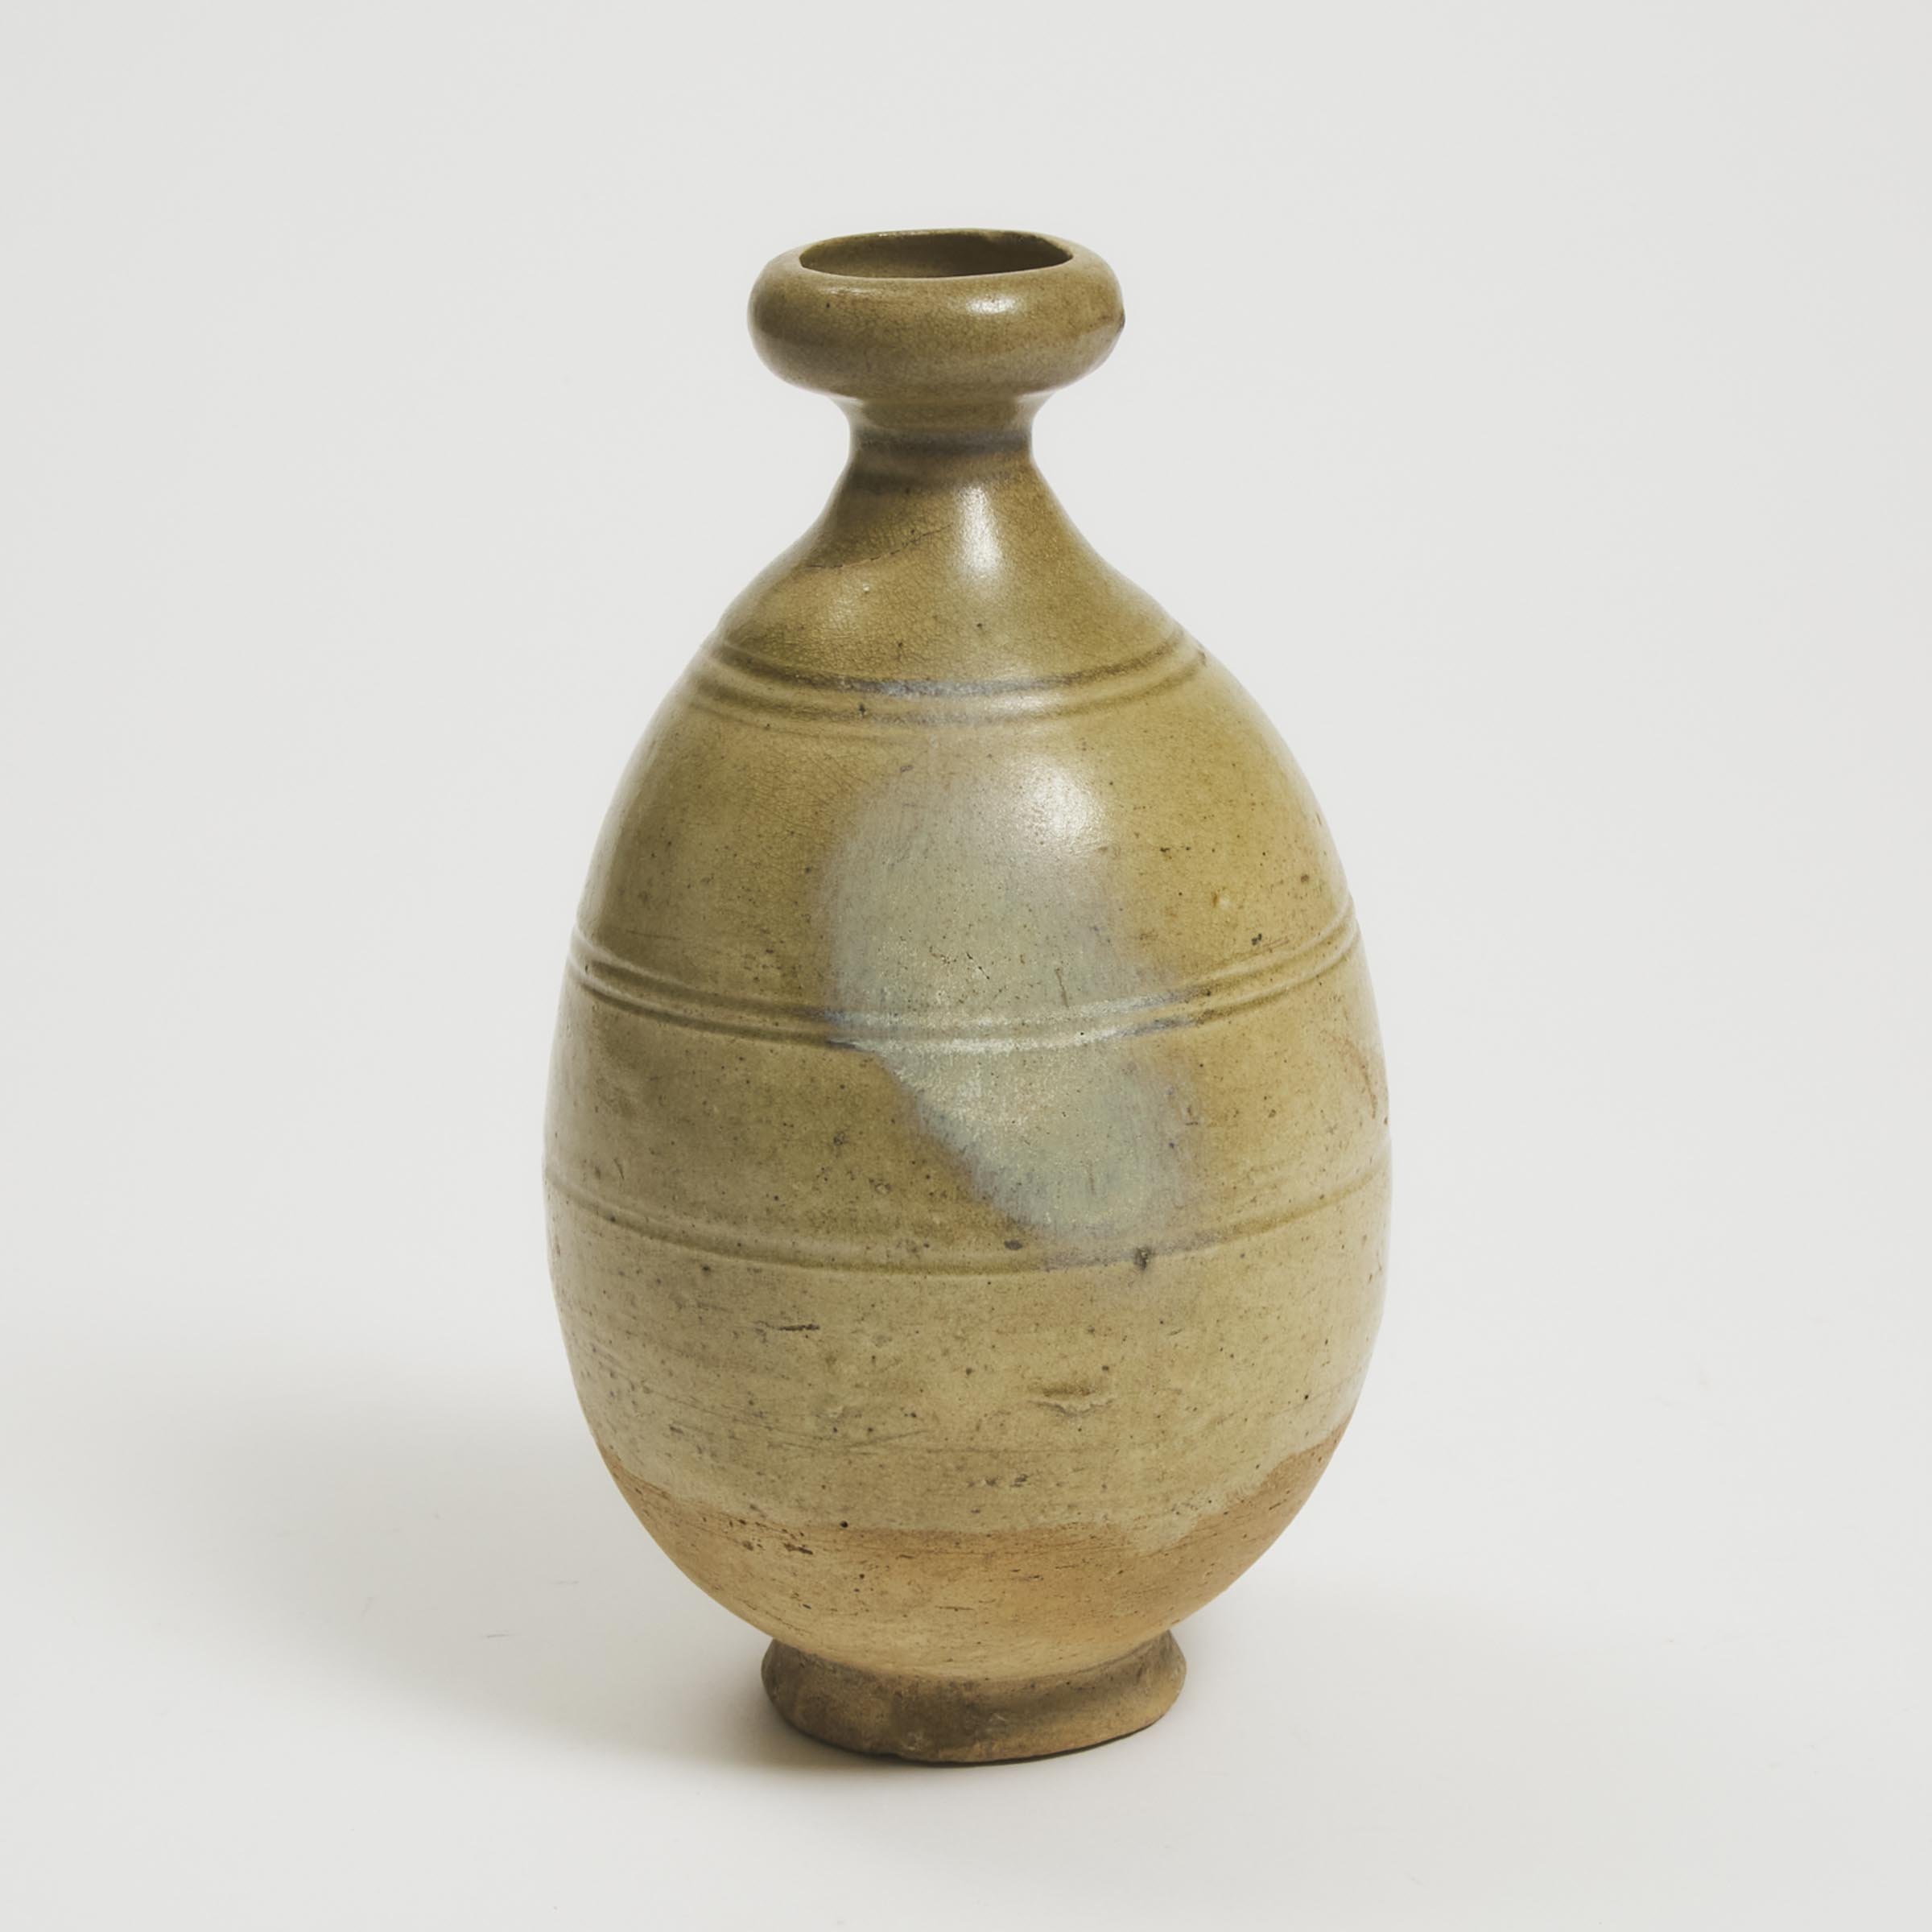 A Greenish Straw-Glazed Bottle Vase,